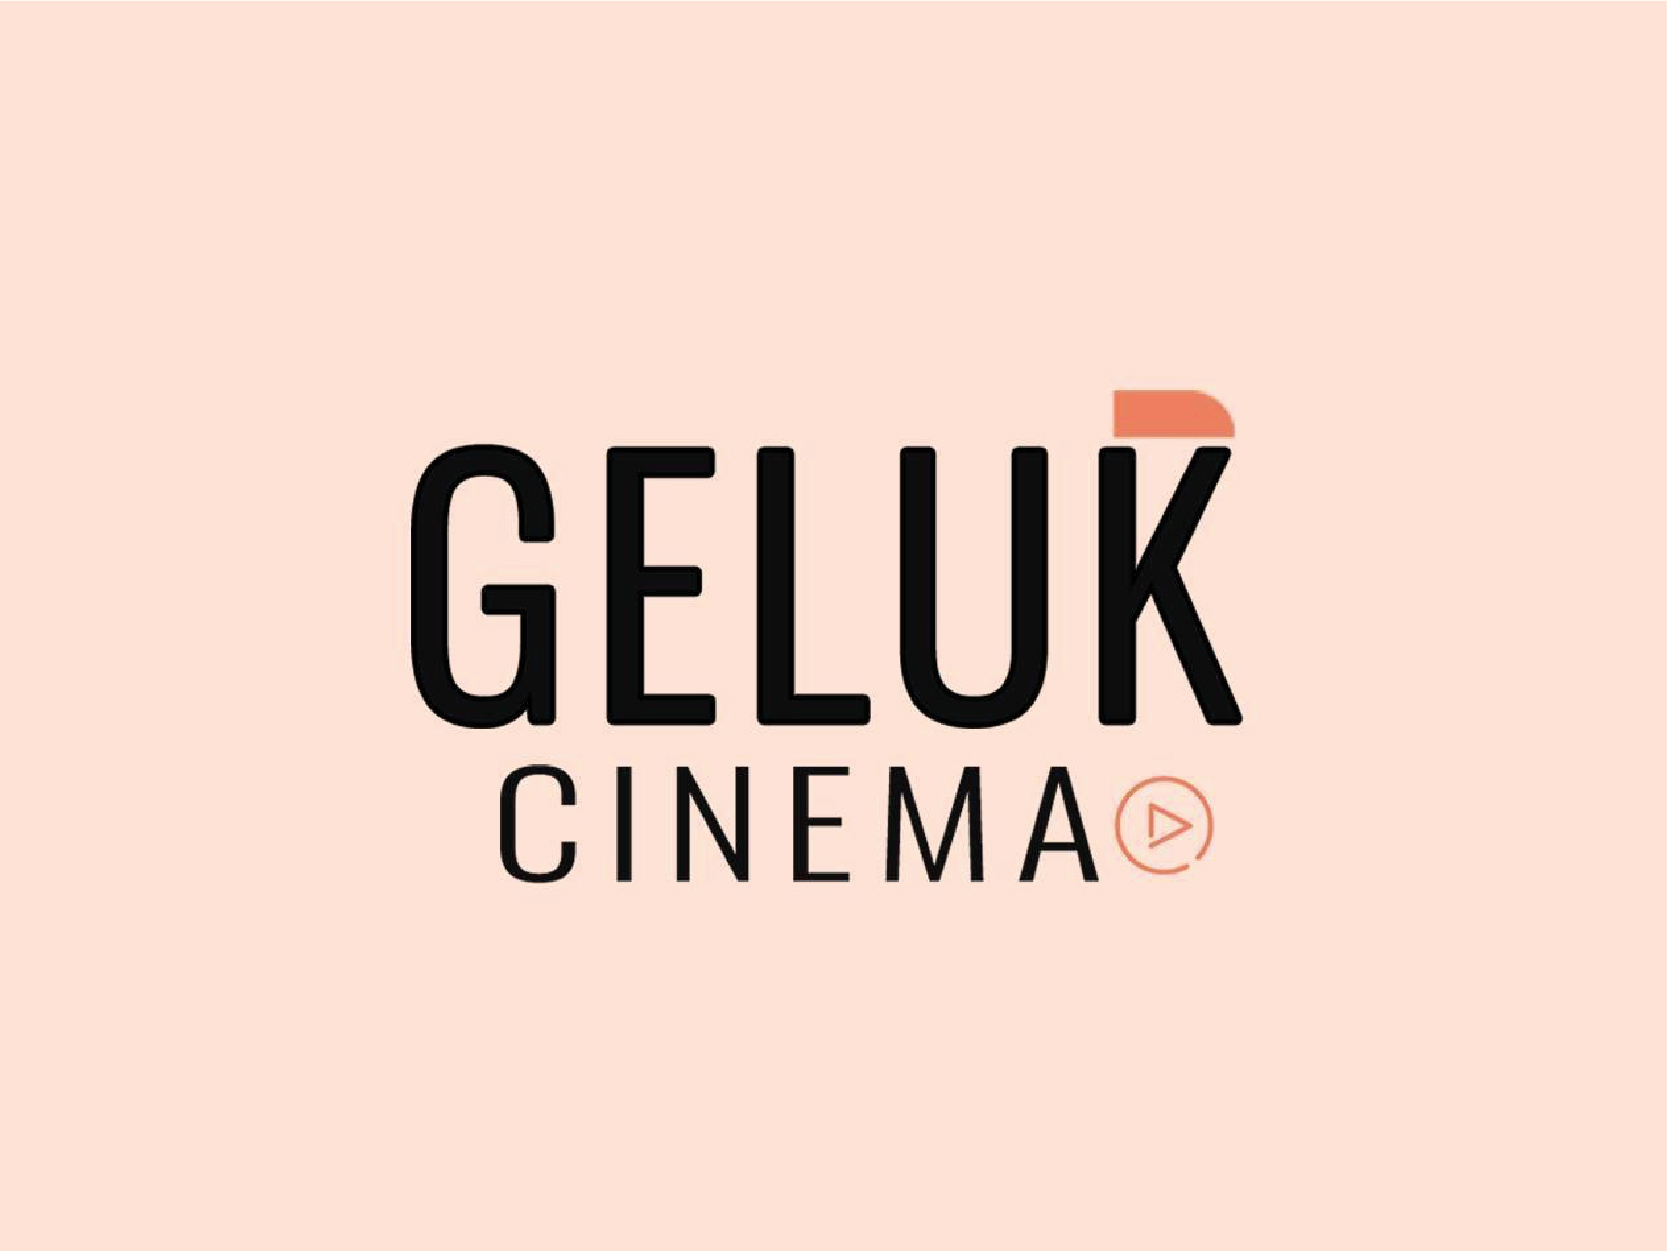 GELUK CINEMA